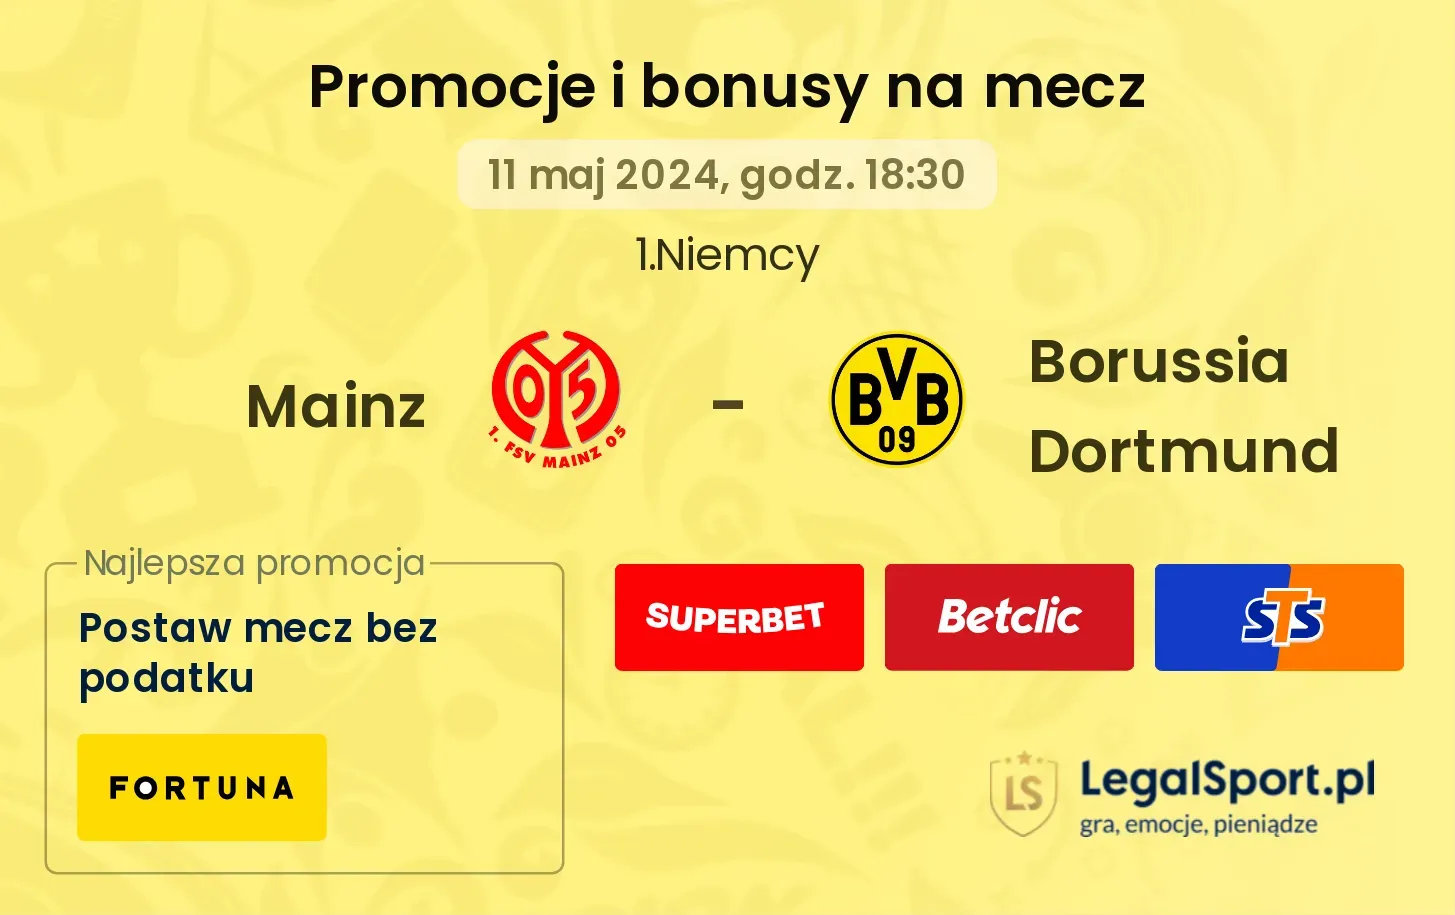 Mainz - Borussia Dortmund promocje bonusy na mecz